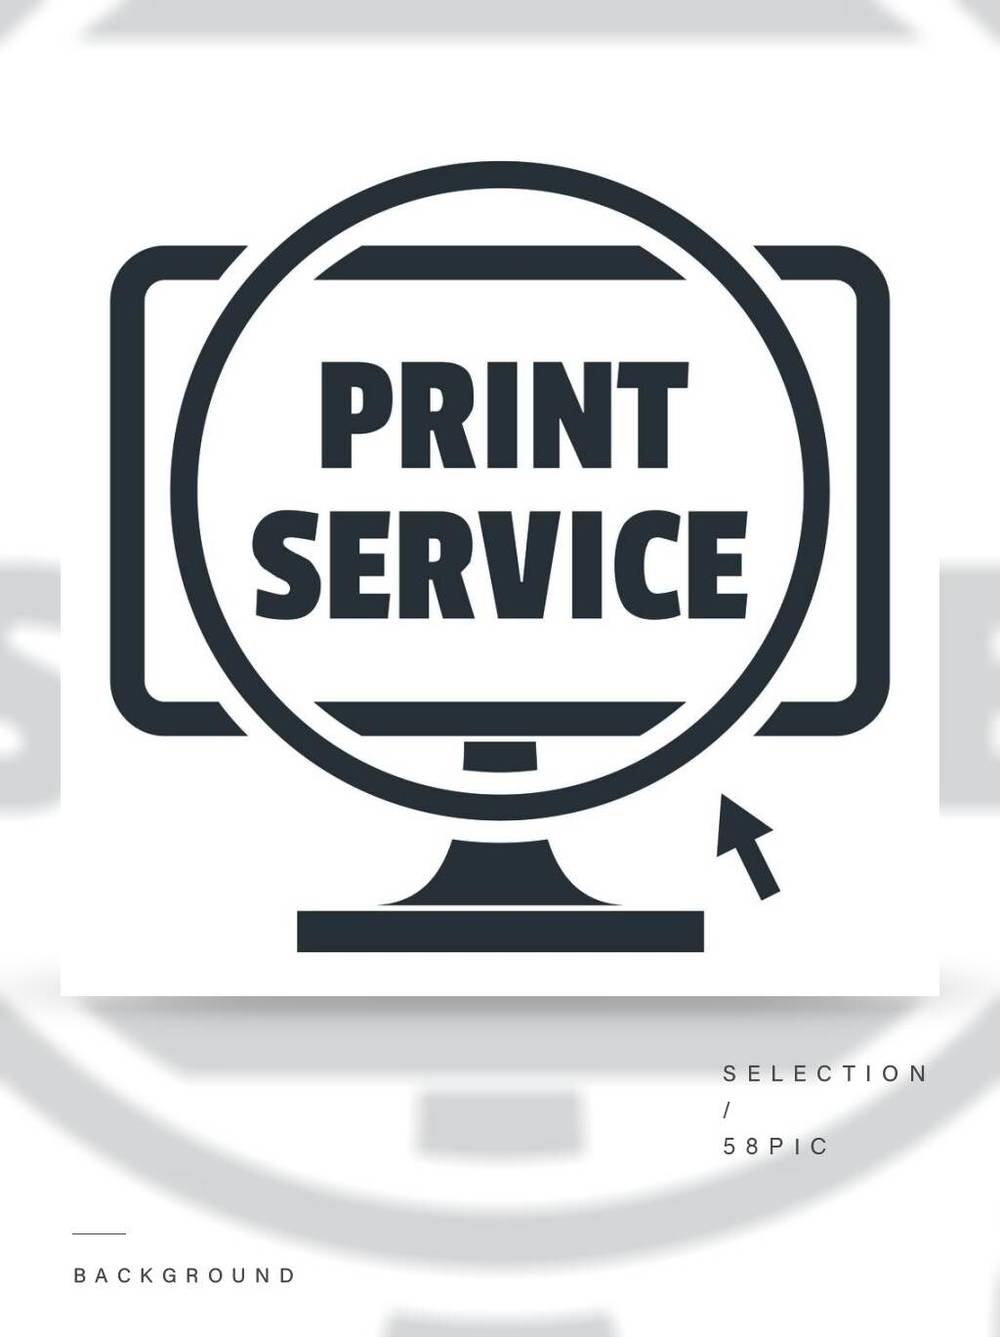 打印服务徽标印刷服务在白色背景网络设计的传染媒介商标的简单的例证隔绝的打印服务徽标简约风格